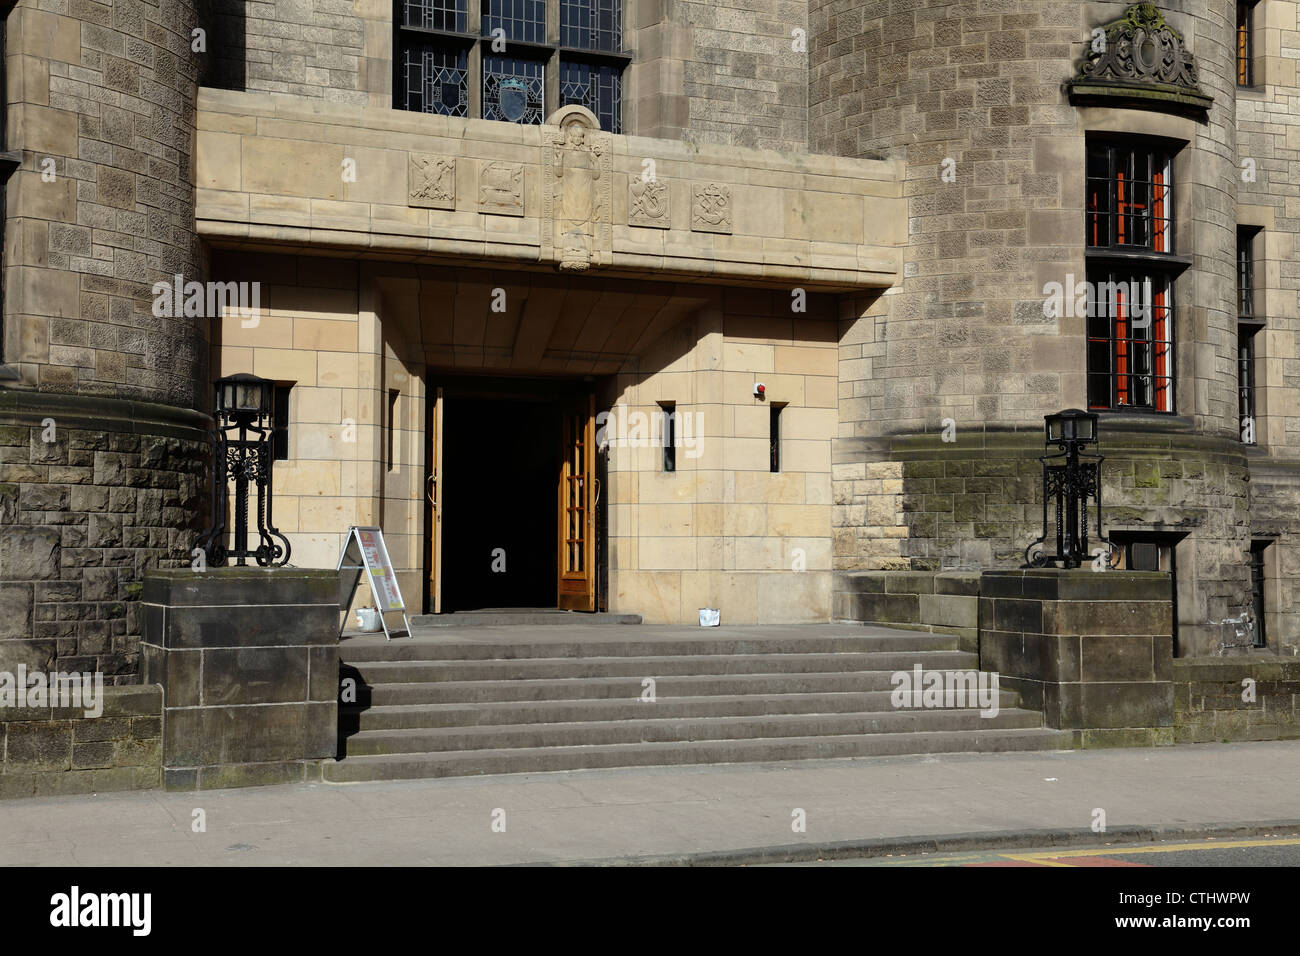 University of Glasgow Student Union building entrance on University Avenue, Scotland, UK Stock Photo